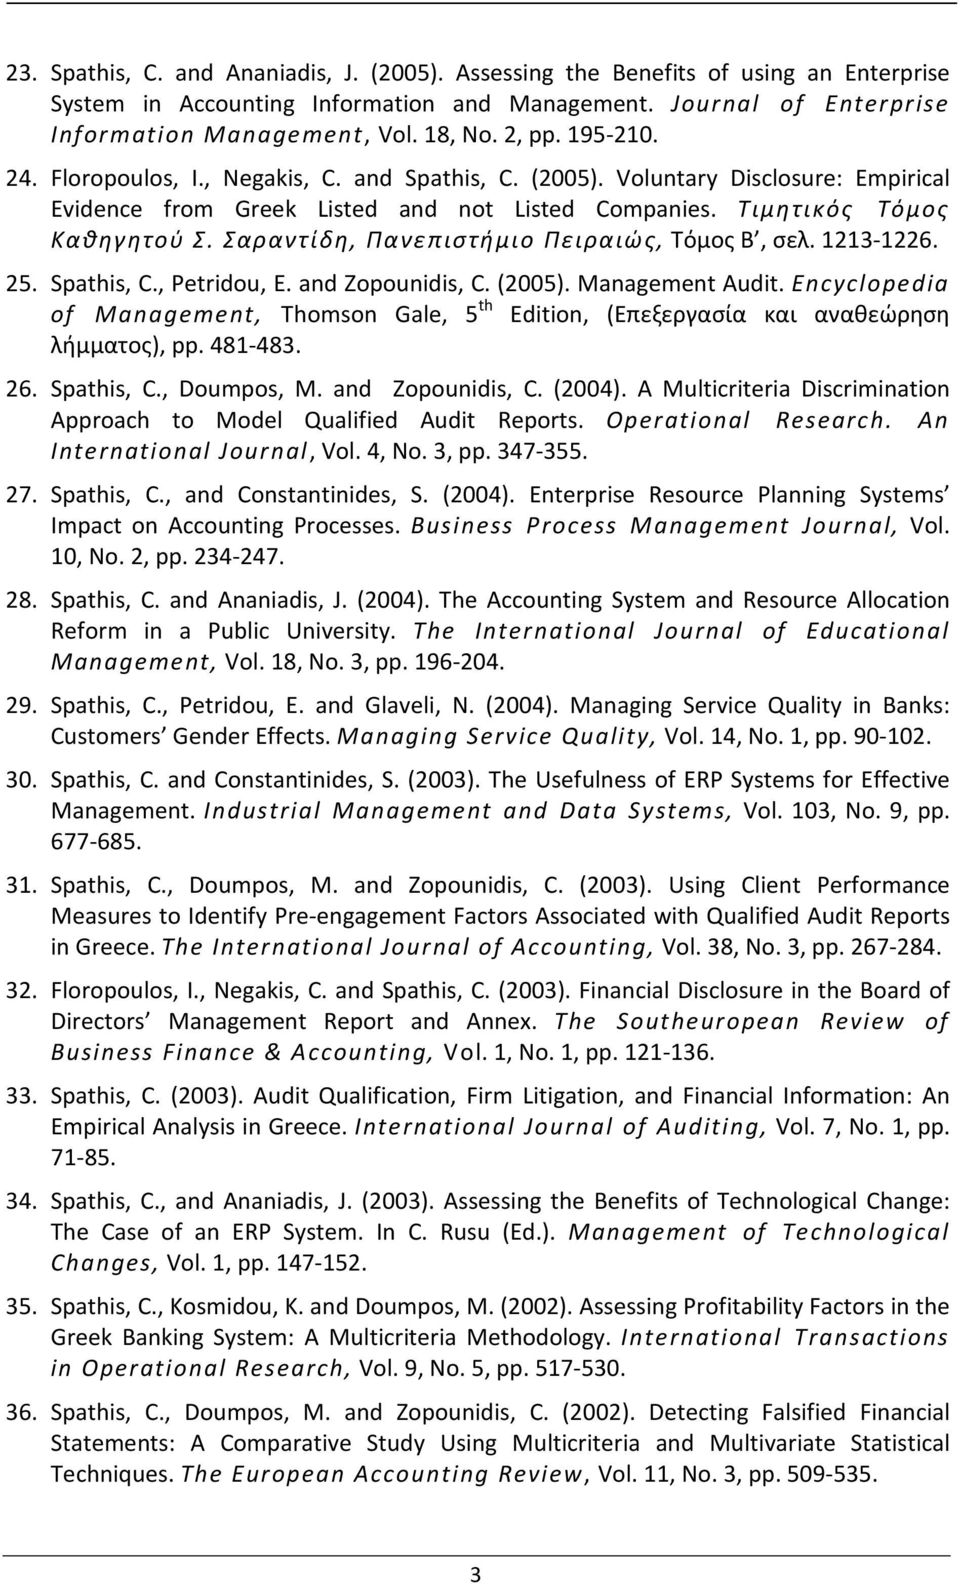 Σαραντίδη, Πανεπιστήμιο Πειραιώς, Τόμος B, σελ. 1213-1226. 25. Spathis, C., Petridou, E. and Zopounidis, C. (2005). Management Audit.